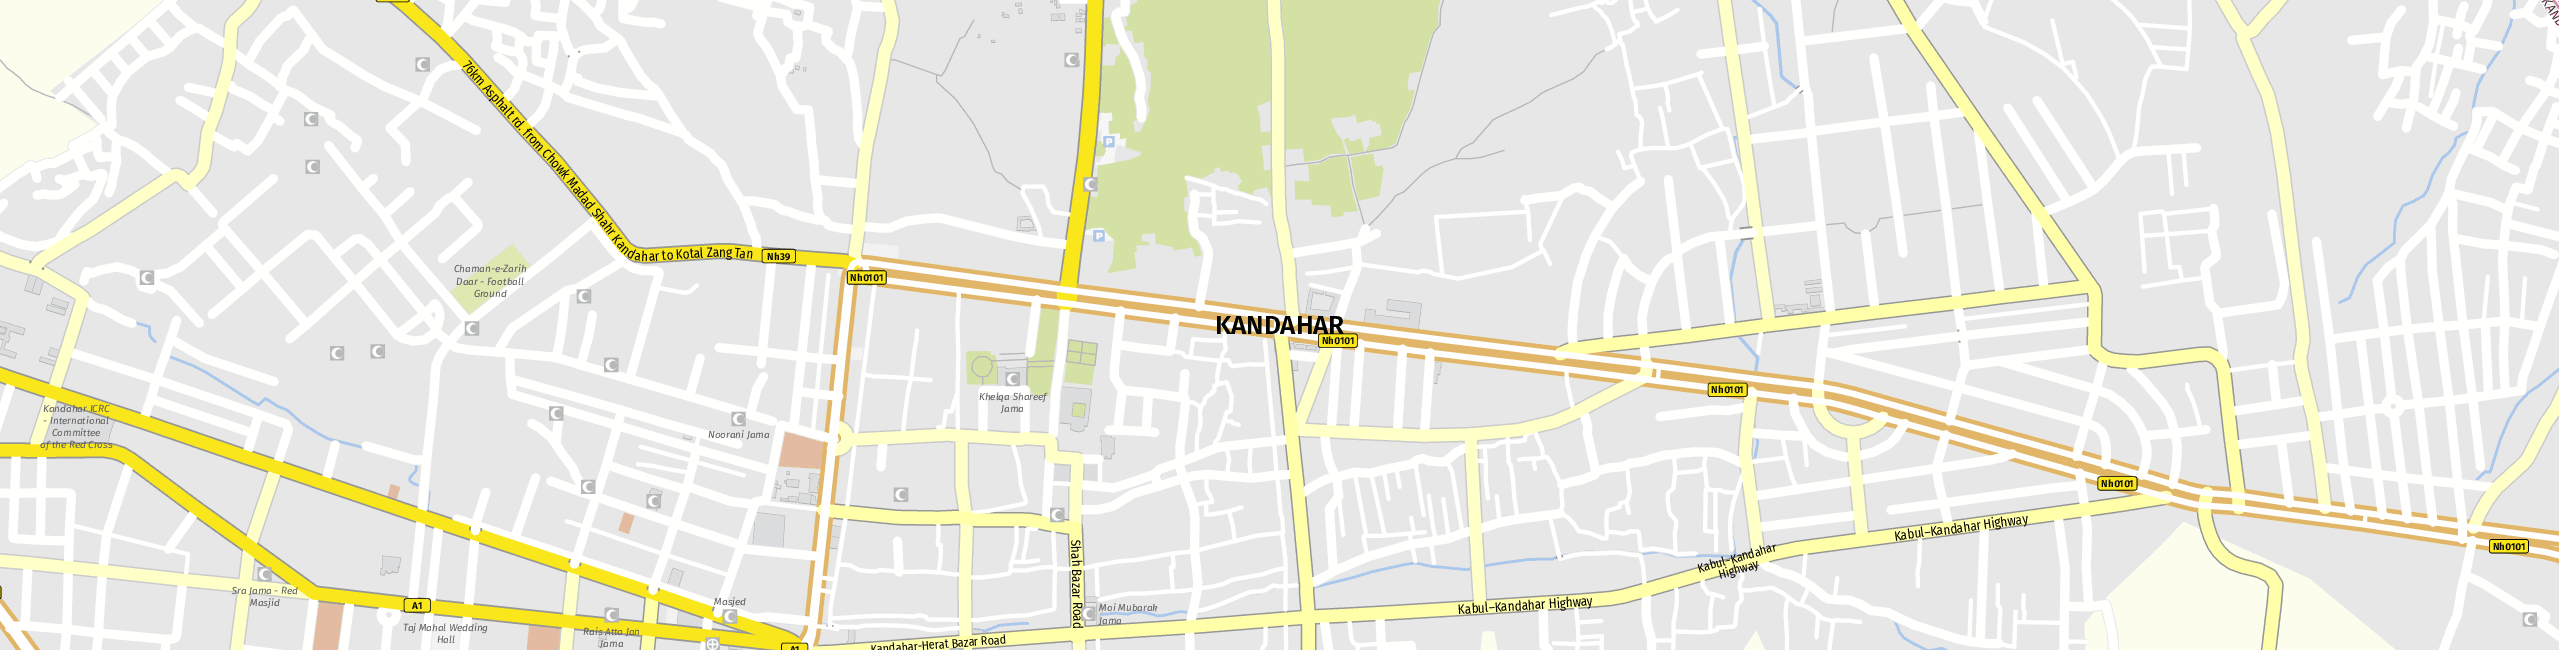 Stadtplan Kandahar zum Downloaden.